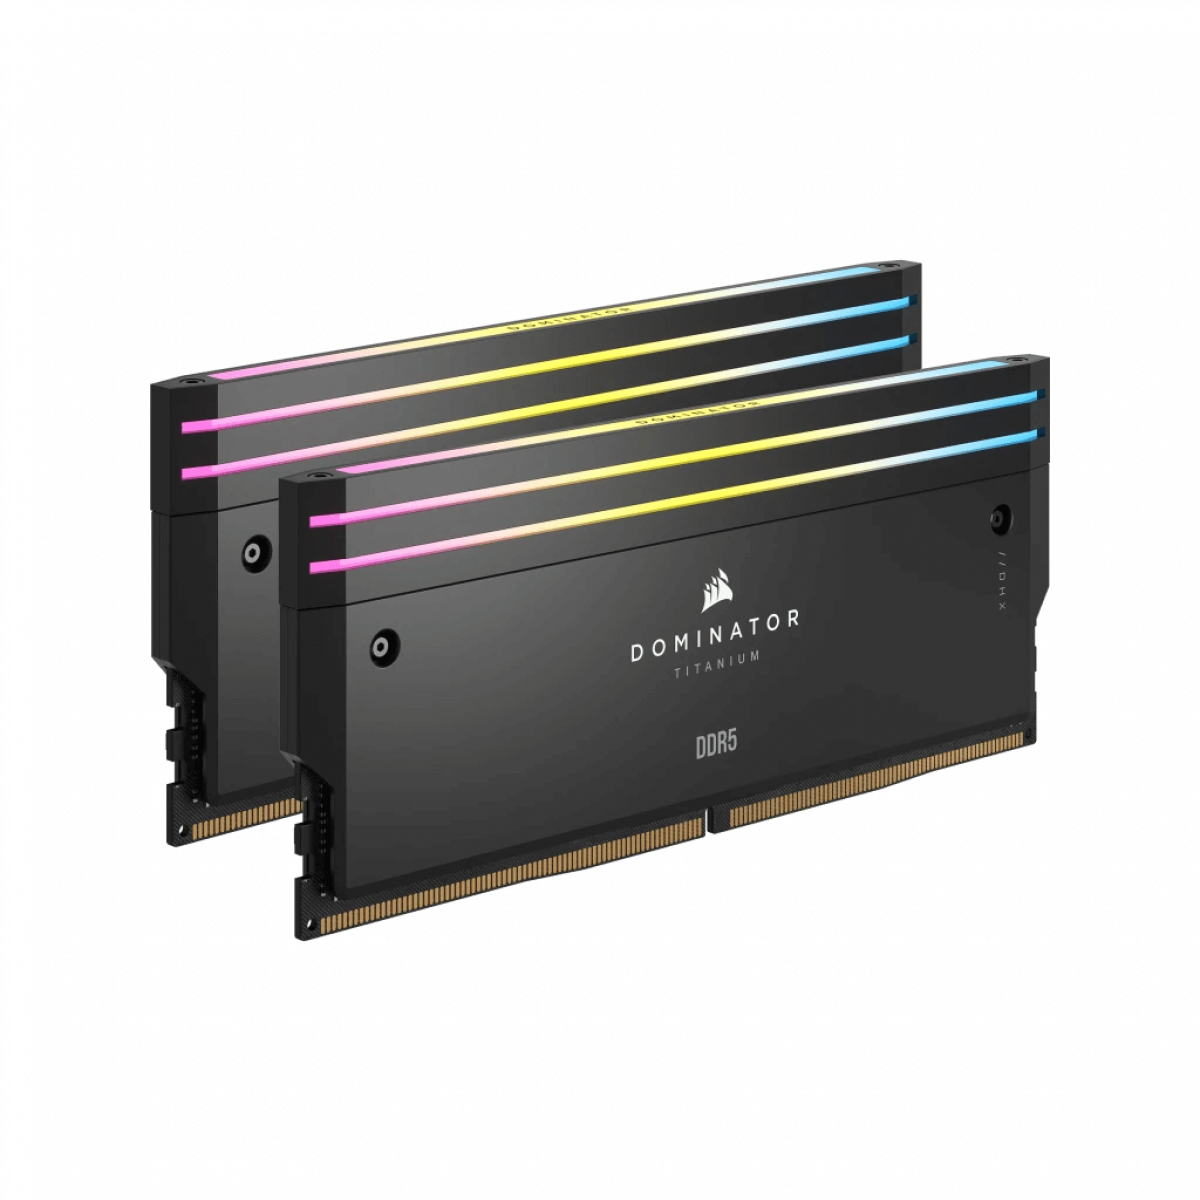 RAM DOMINATOR TITANIUM Black HeatspreaderDDR5, 6400MT/s 64GB 2x32GB DIMM, XMP 3.0, RGB LED, 1.4V